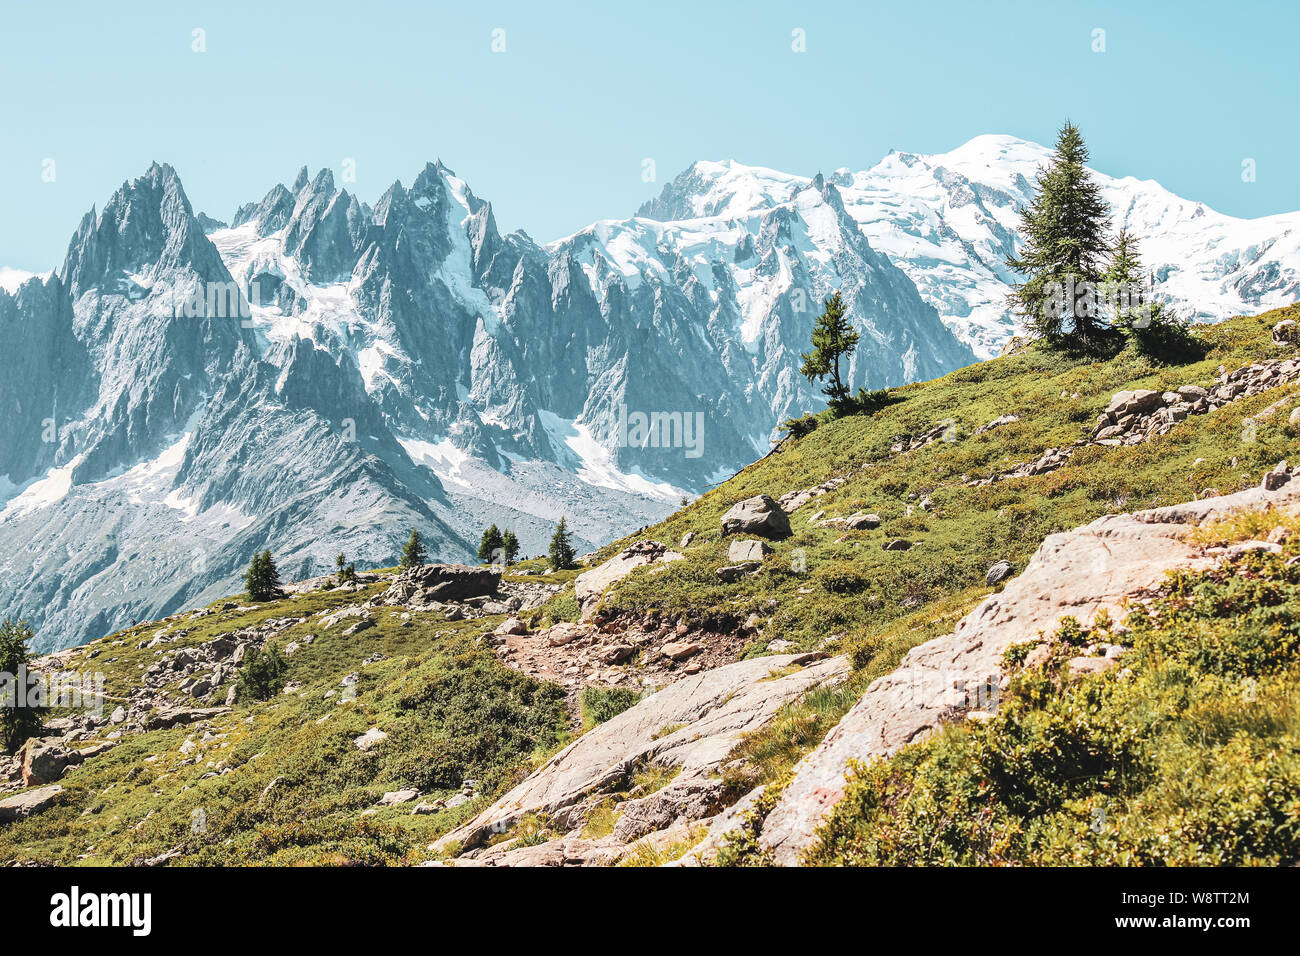 Alpine Landschaft mit schneebedeckten Bergen, darunter der höchste Berg Europas, den Mont Blanc. Im Spätsommer in der Nähe von Chamonix, Frankreich fotografiert. Französische Alpen im Sommer. Abenteuer, Berg wandern. Stockfoto